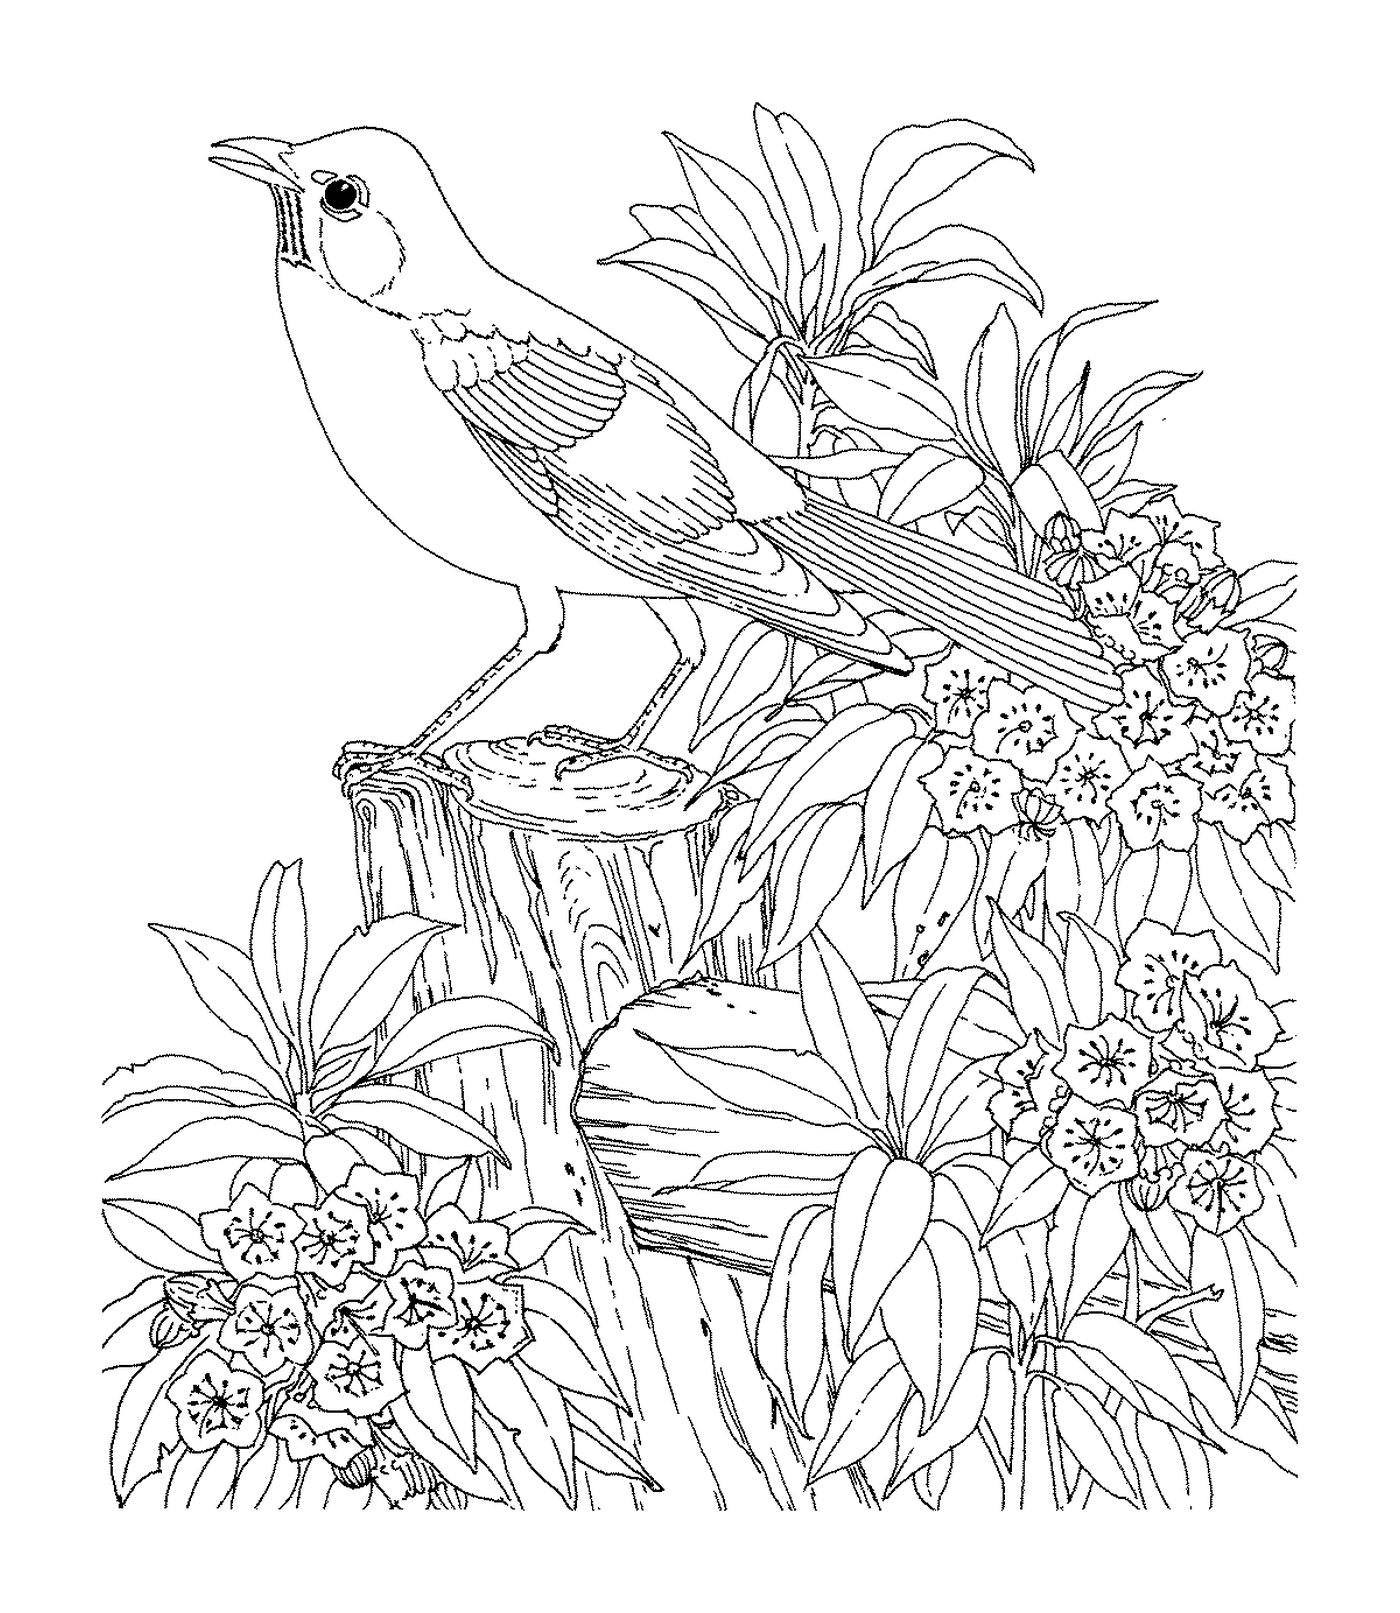  Um pássaro sentado em um galho 